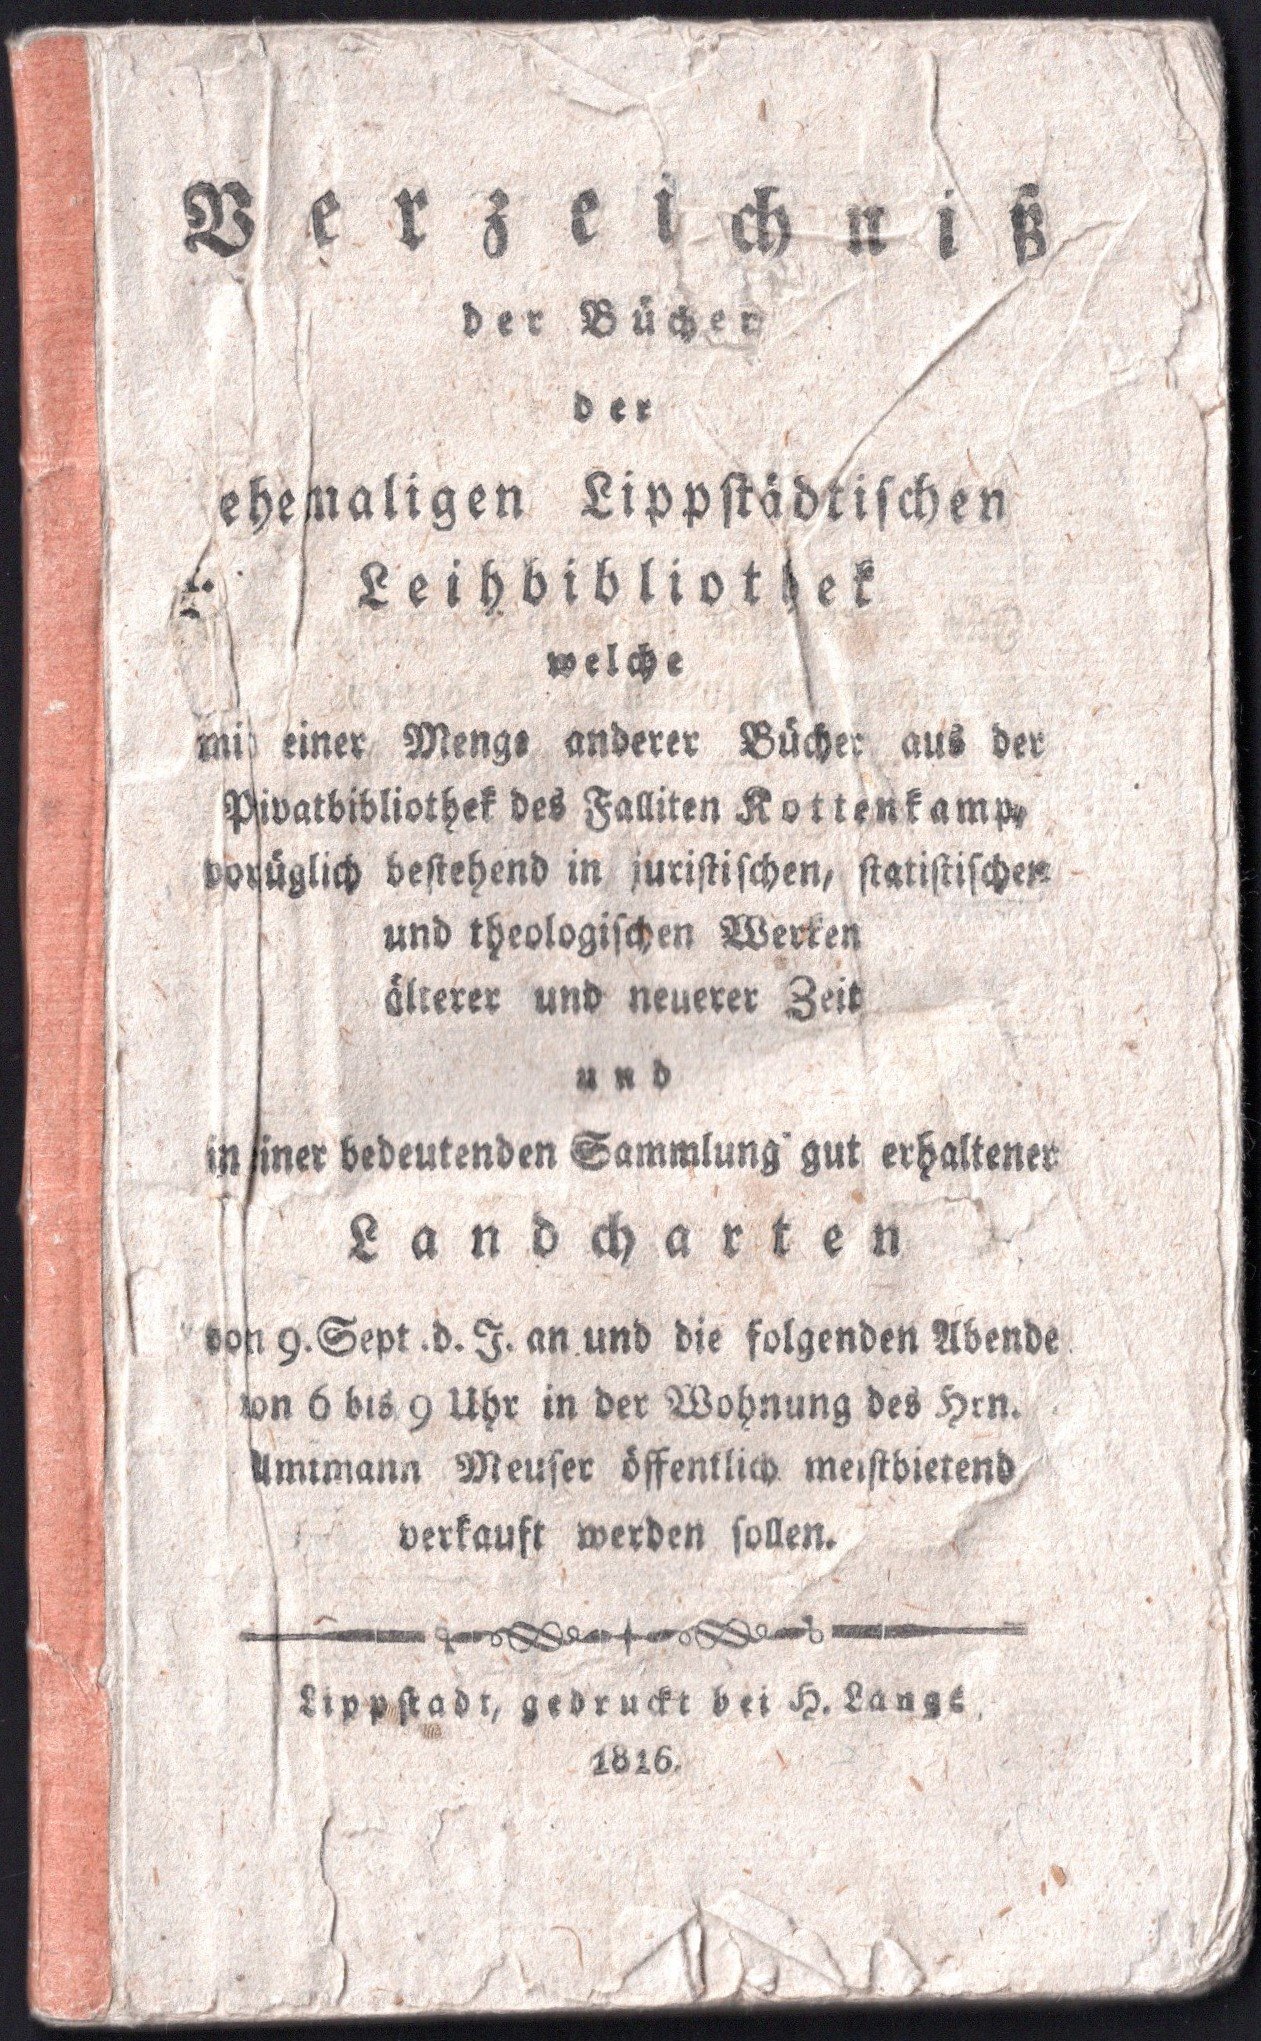 Verzeichnis der Bücher der ehemaligen Lippstädtischen Leihbibliothek (Stadtmuseum Lippstadt RR-F)